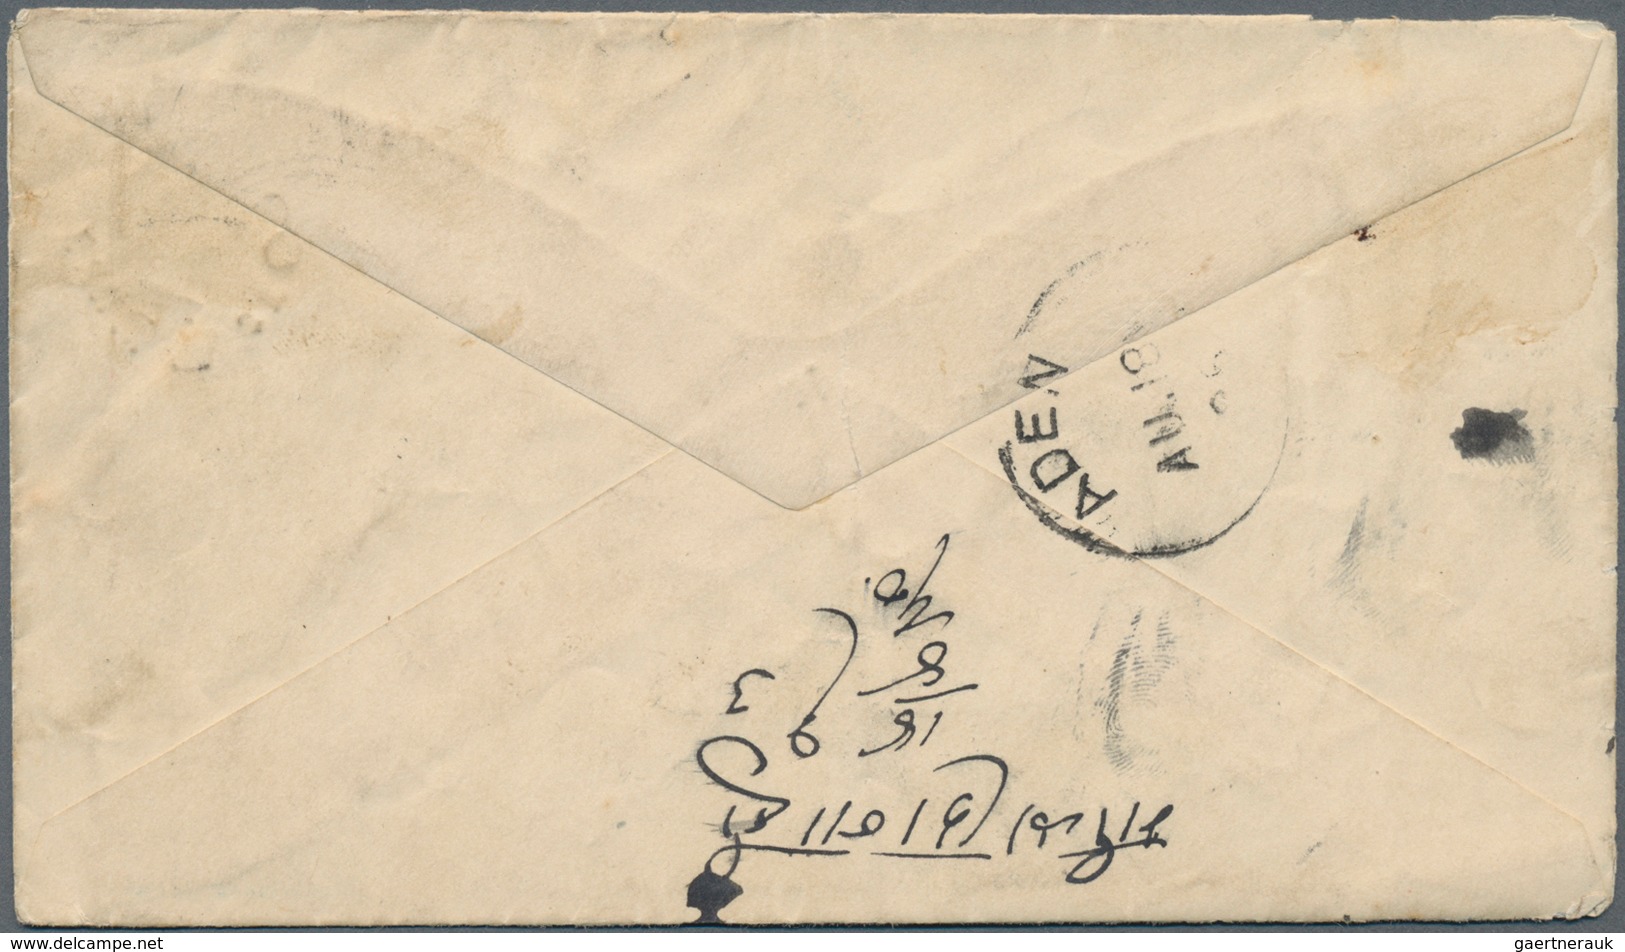 Indien - Feldpost: 1896, ONE Anna On 9 P 'Soldiers' & Seamen's Envelope', Uprated With 1/2 A Blue-gr - Militärpostmarken